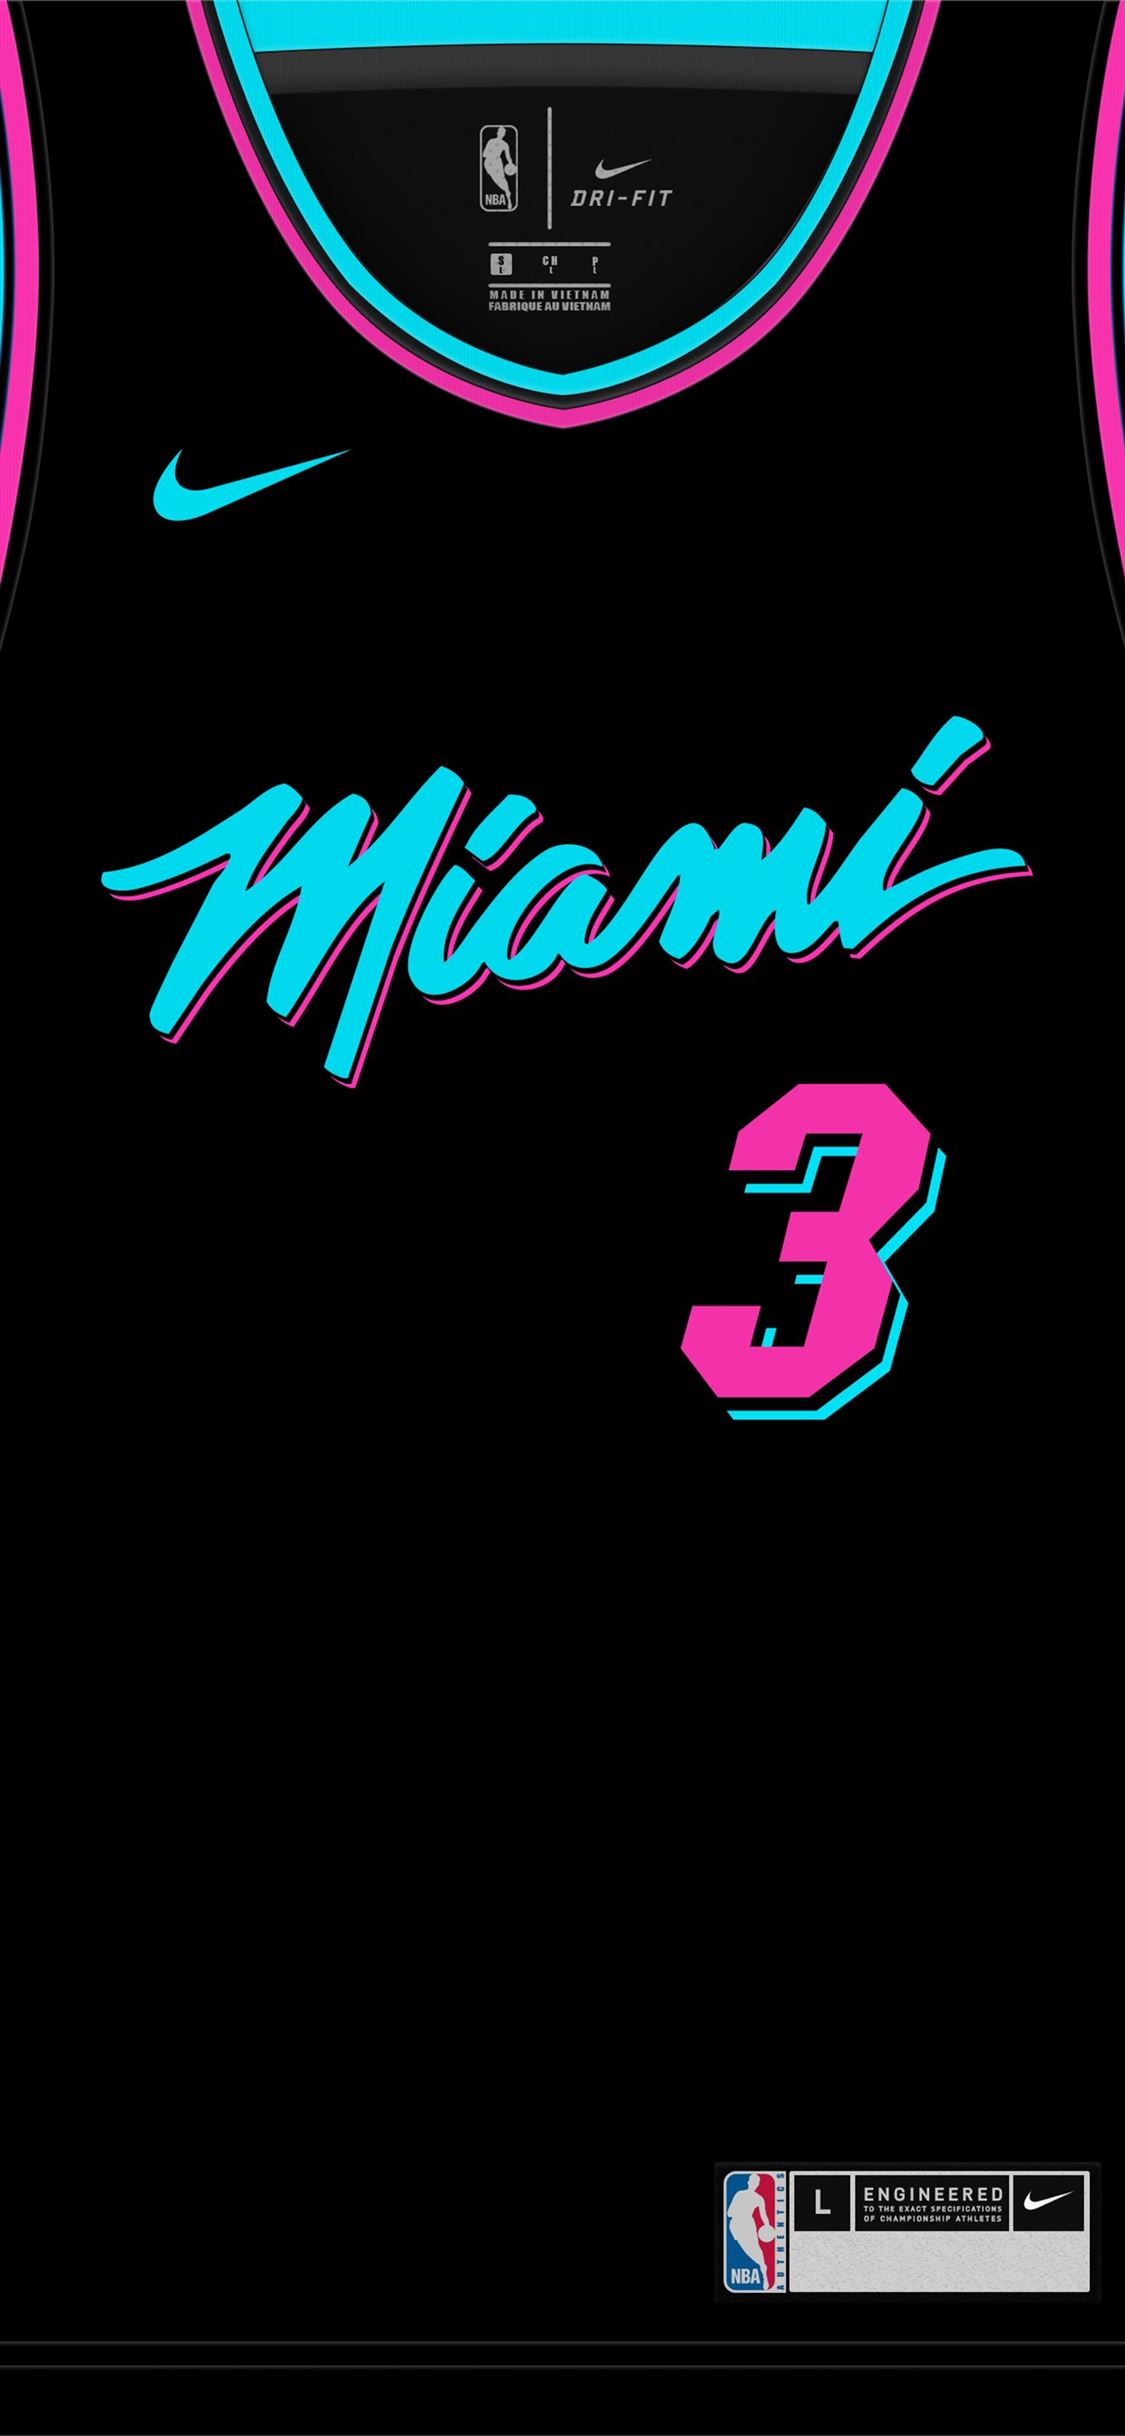 Miami miami in vice font